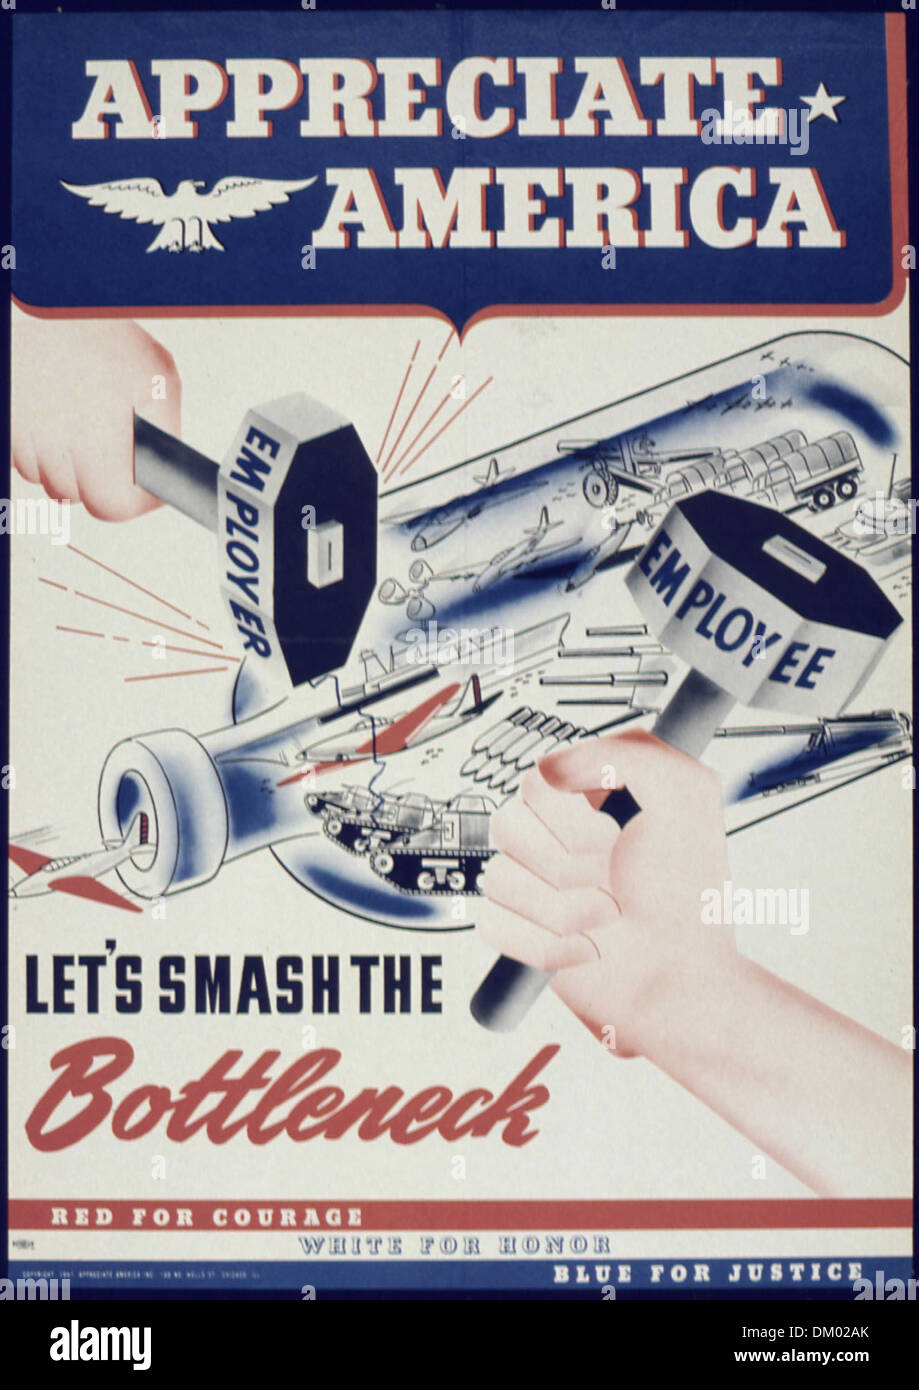 'Appreciate America Let's Smash The Bottleneck' 513870 Stock Photo